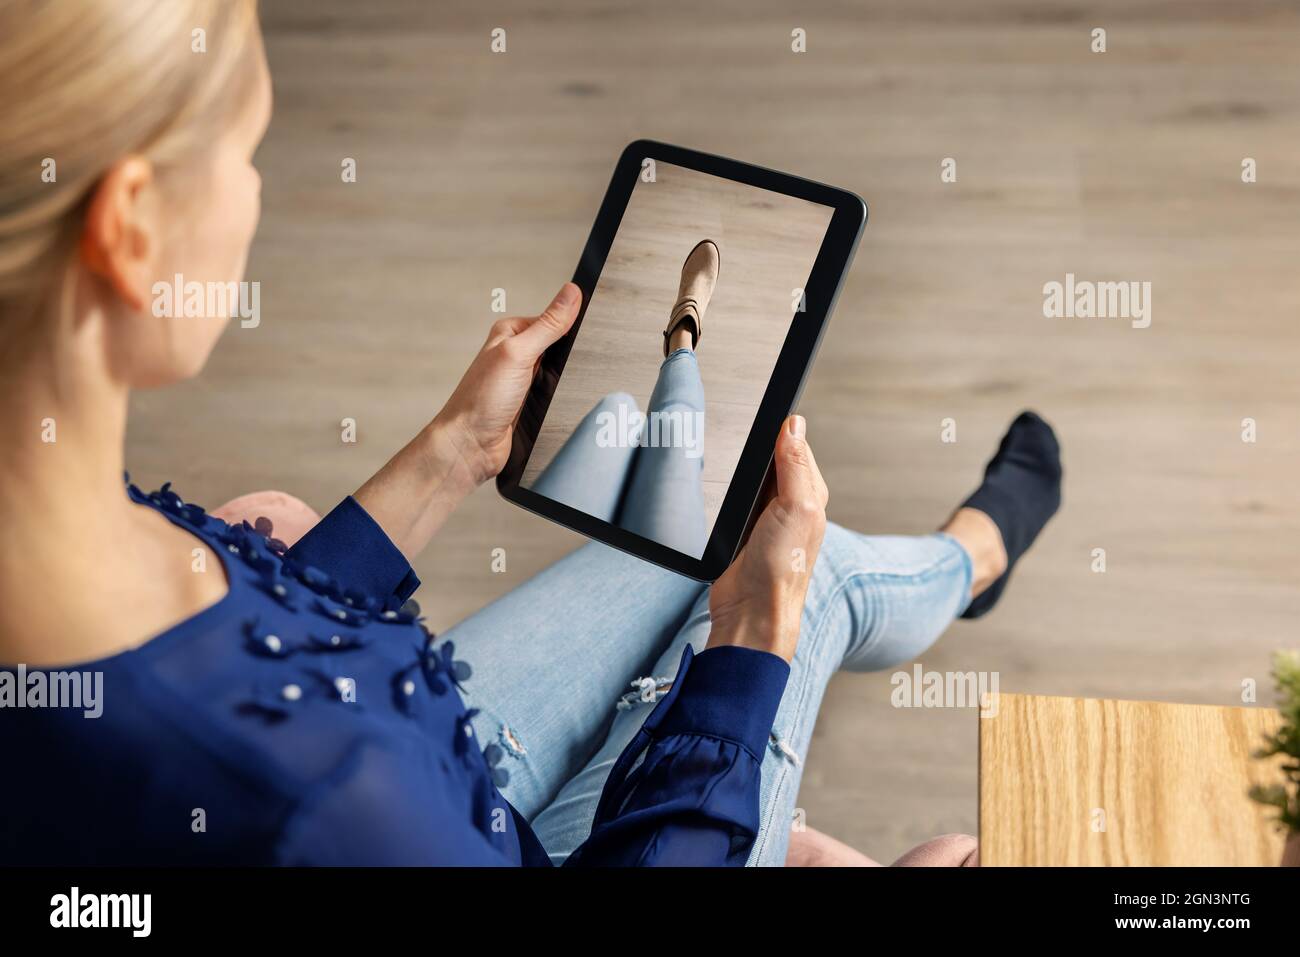 cabine d'essayage virtuelle - femme essayant des chaussures en ligne avec une tablette numérique Banque D'Images